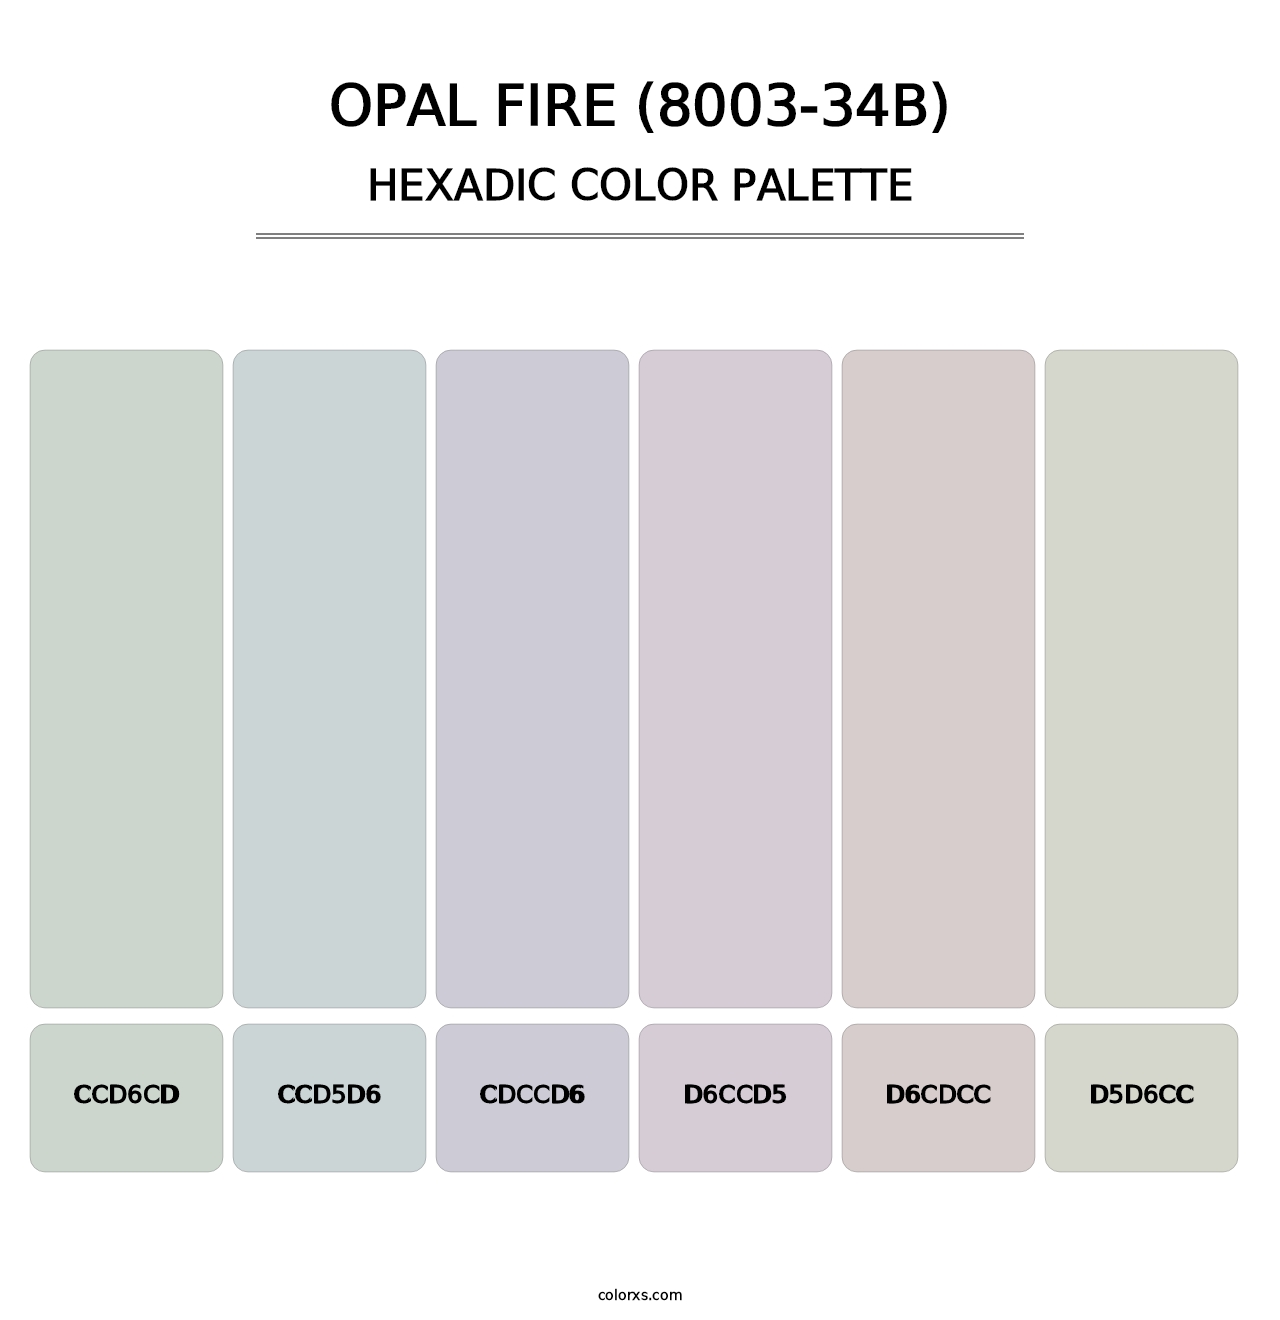 Opal Fire (8003-34B) - Hexadic Color Palette